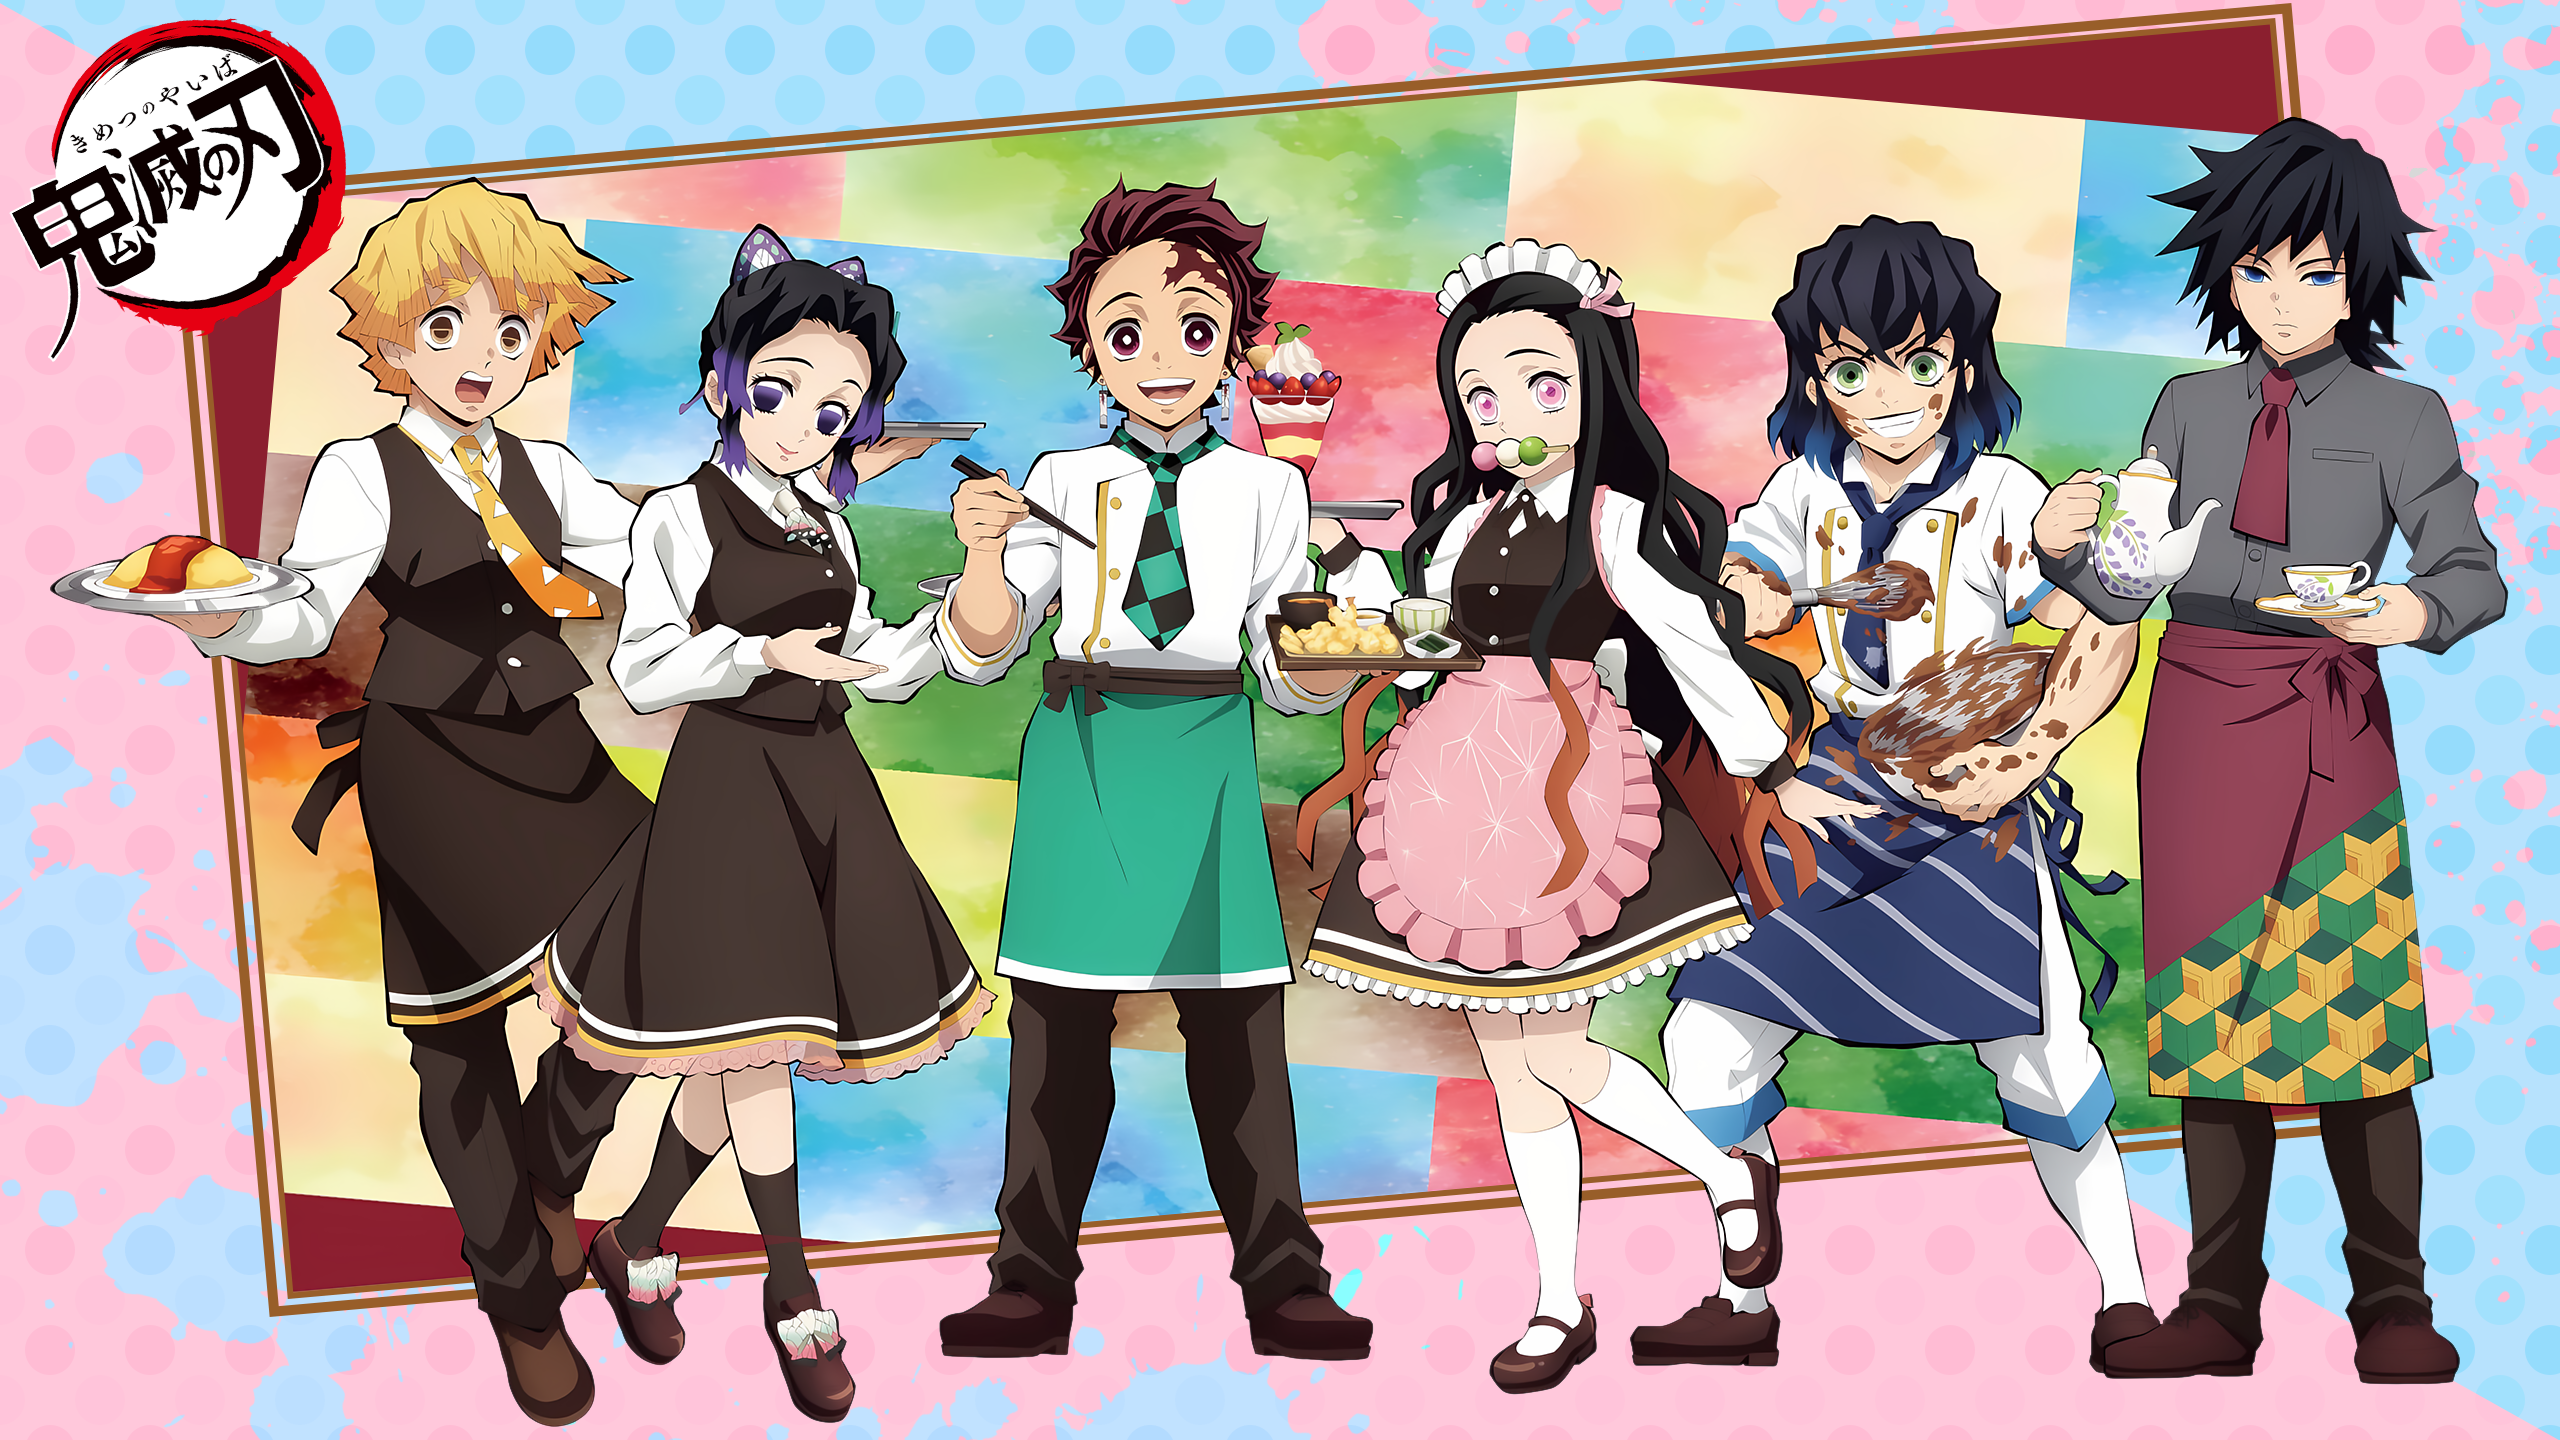 Anime Anime Boys Anime Girls Kimetsu No Yaiba Kochou Shinobu Inosuke Hashibira Giyu Tomioka Kimetsu  2560x1440